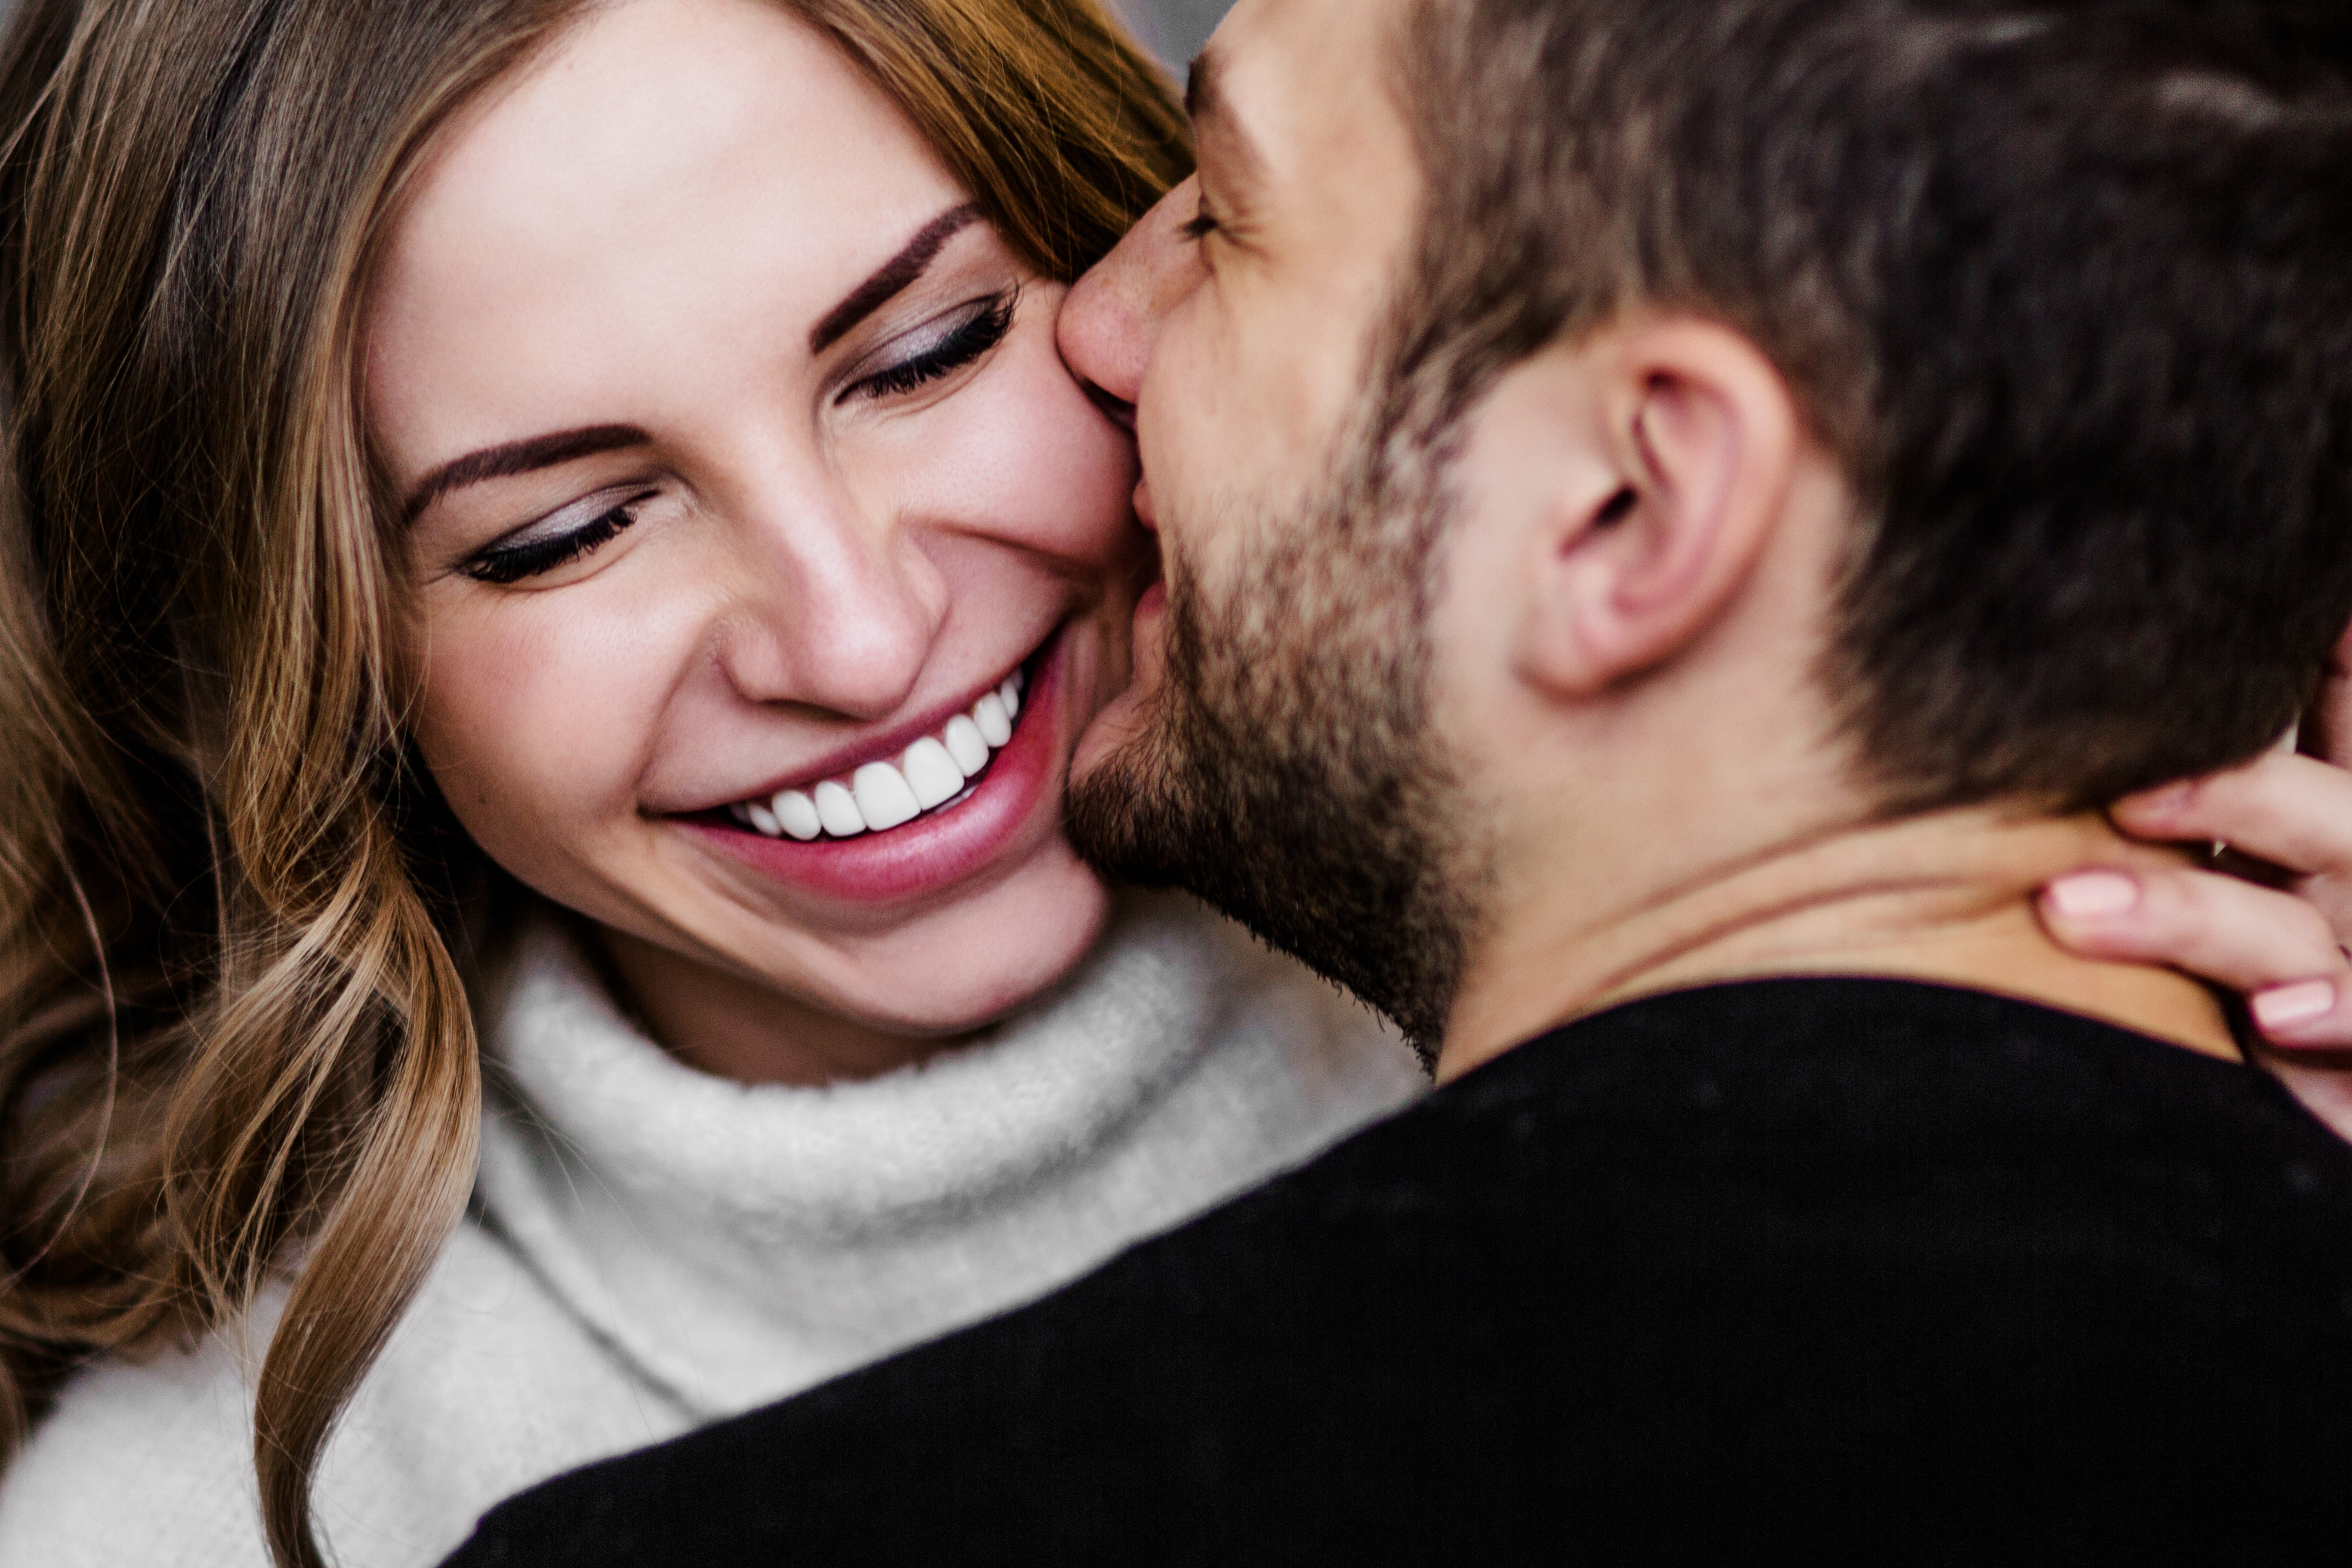 Un homme embrassant sa partenaire sur la joue | Source : Shutterstock